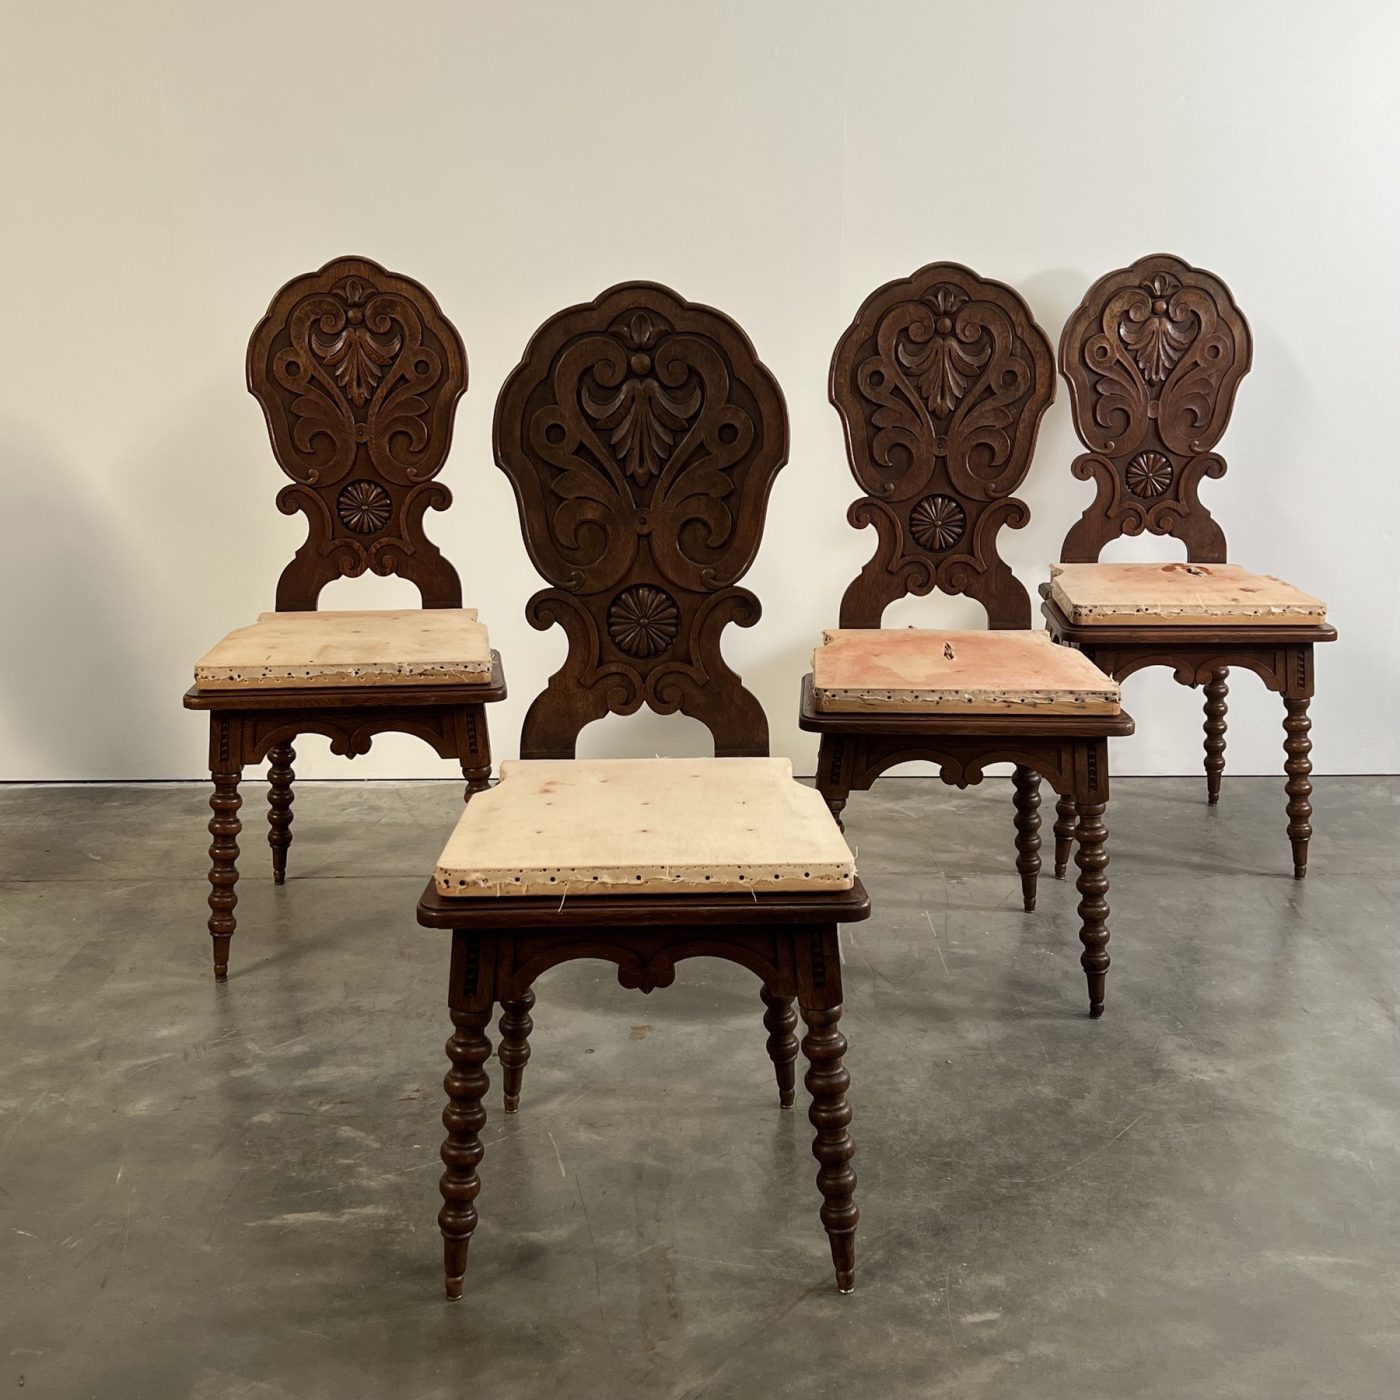 objet-vagabond-antique-chairs0005